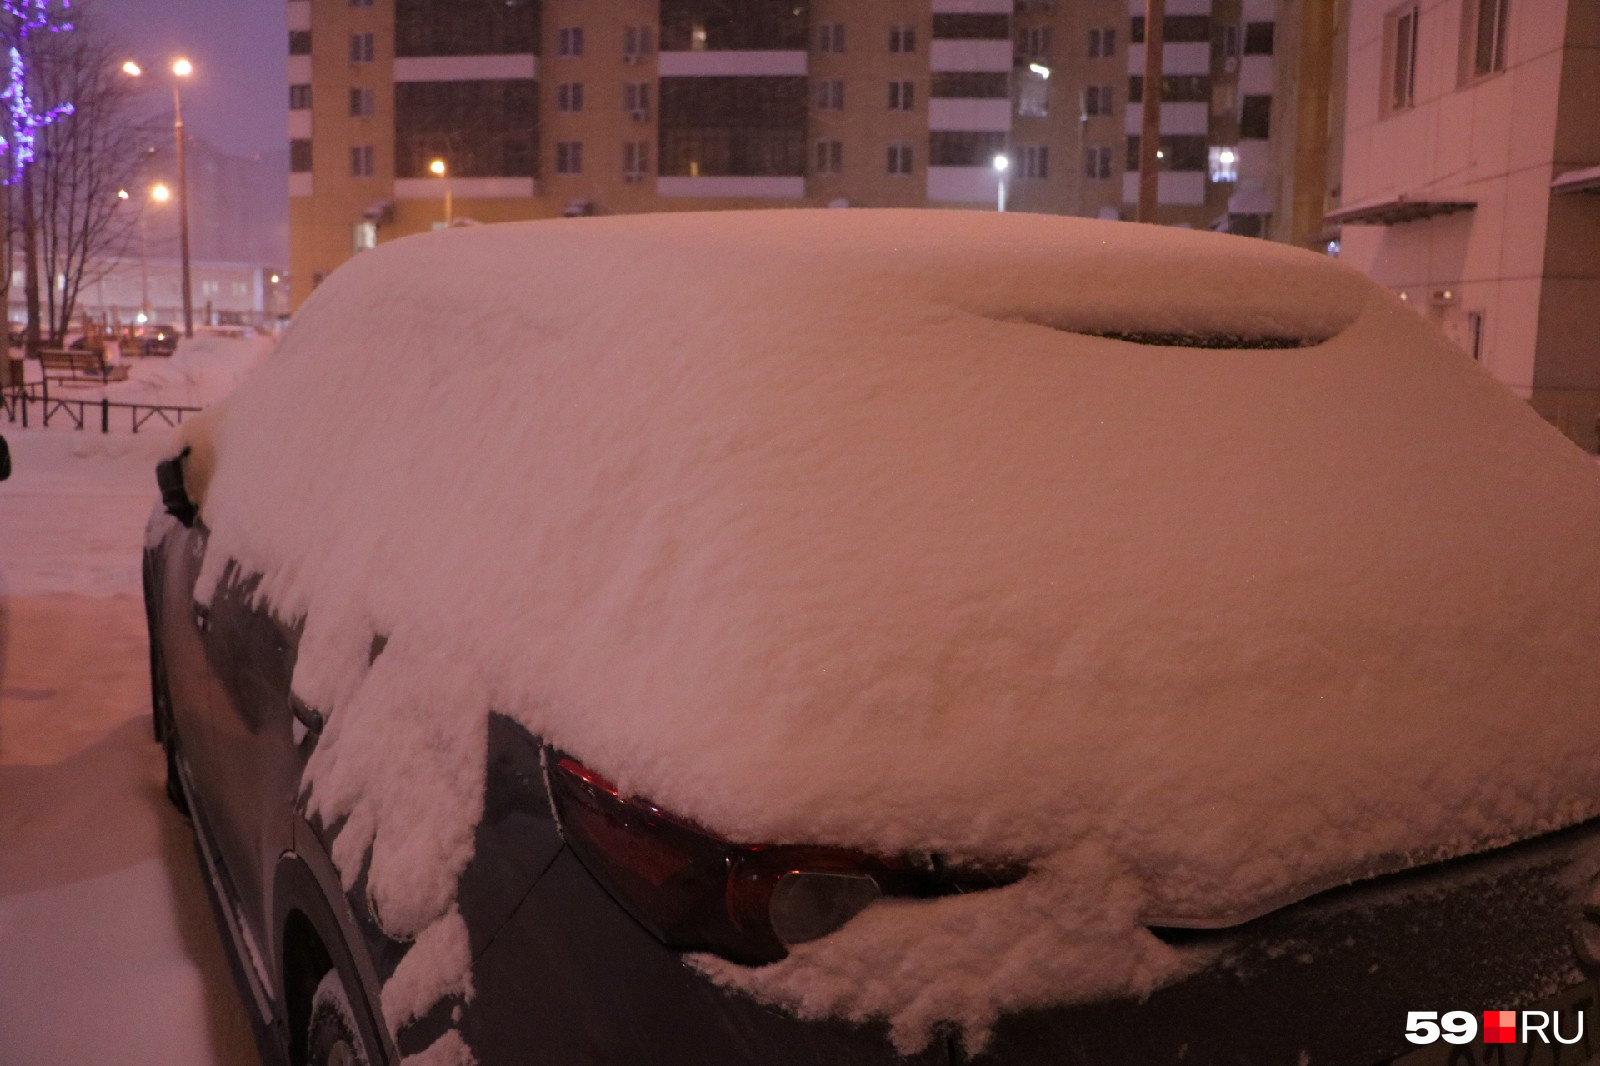 Водителям предстоит потрудиться, чтобы очистить свои автомобили от снега 